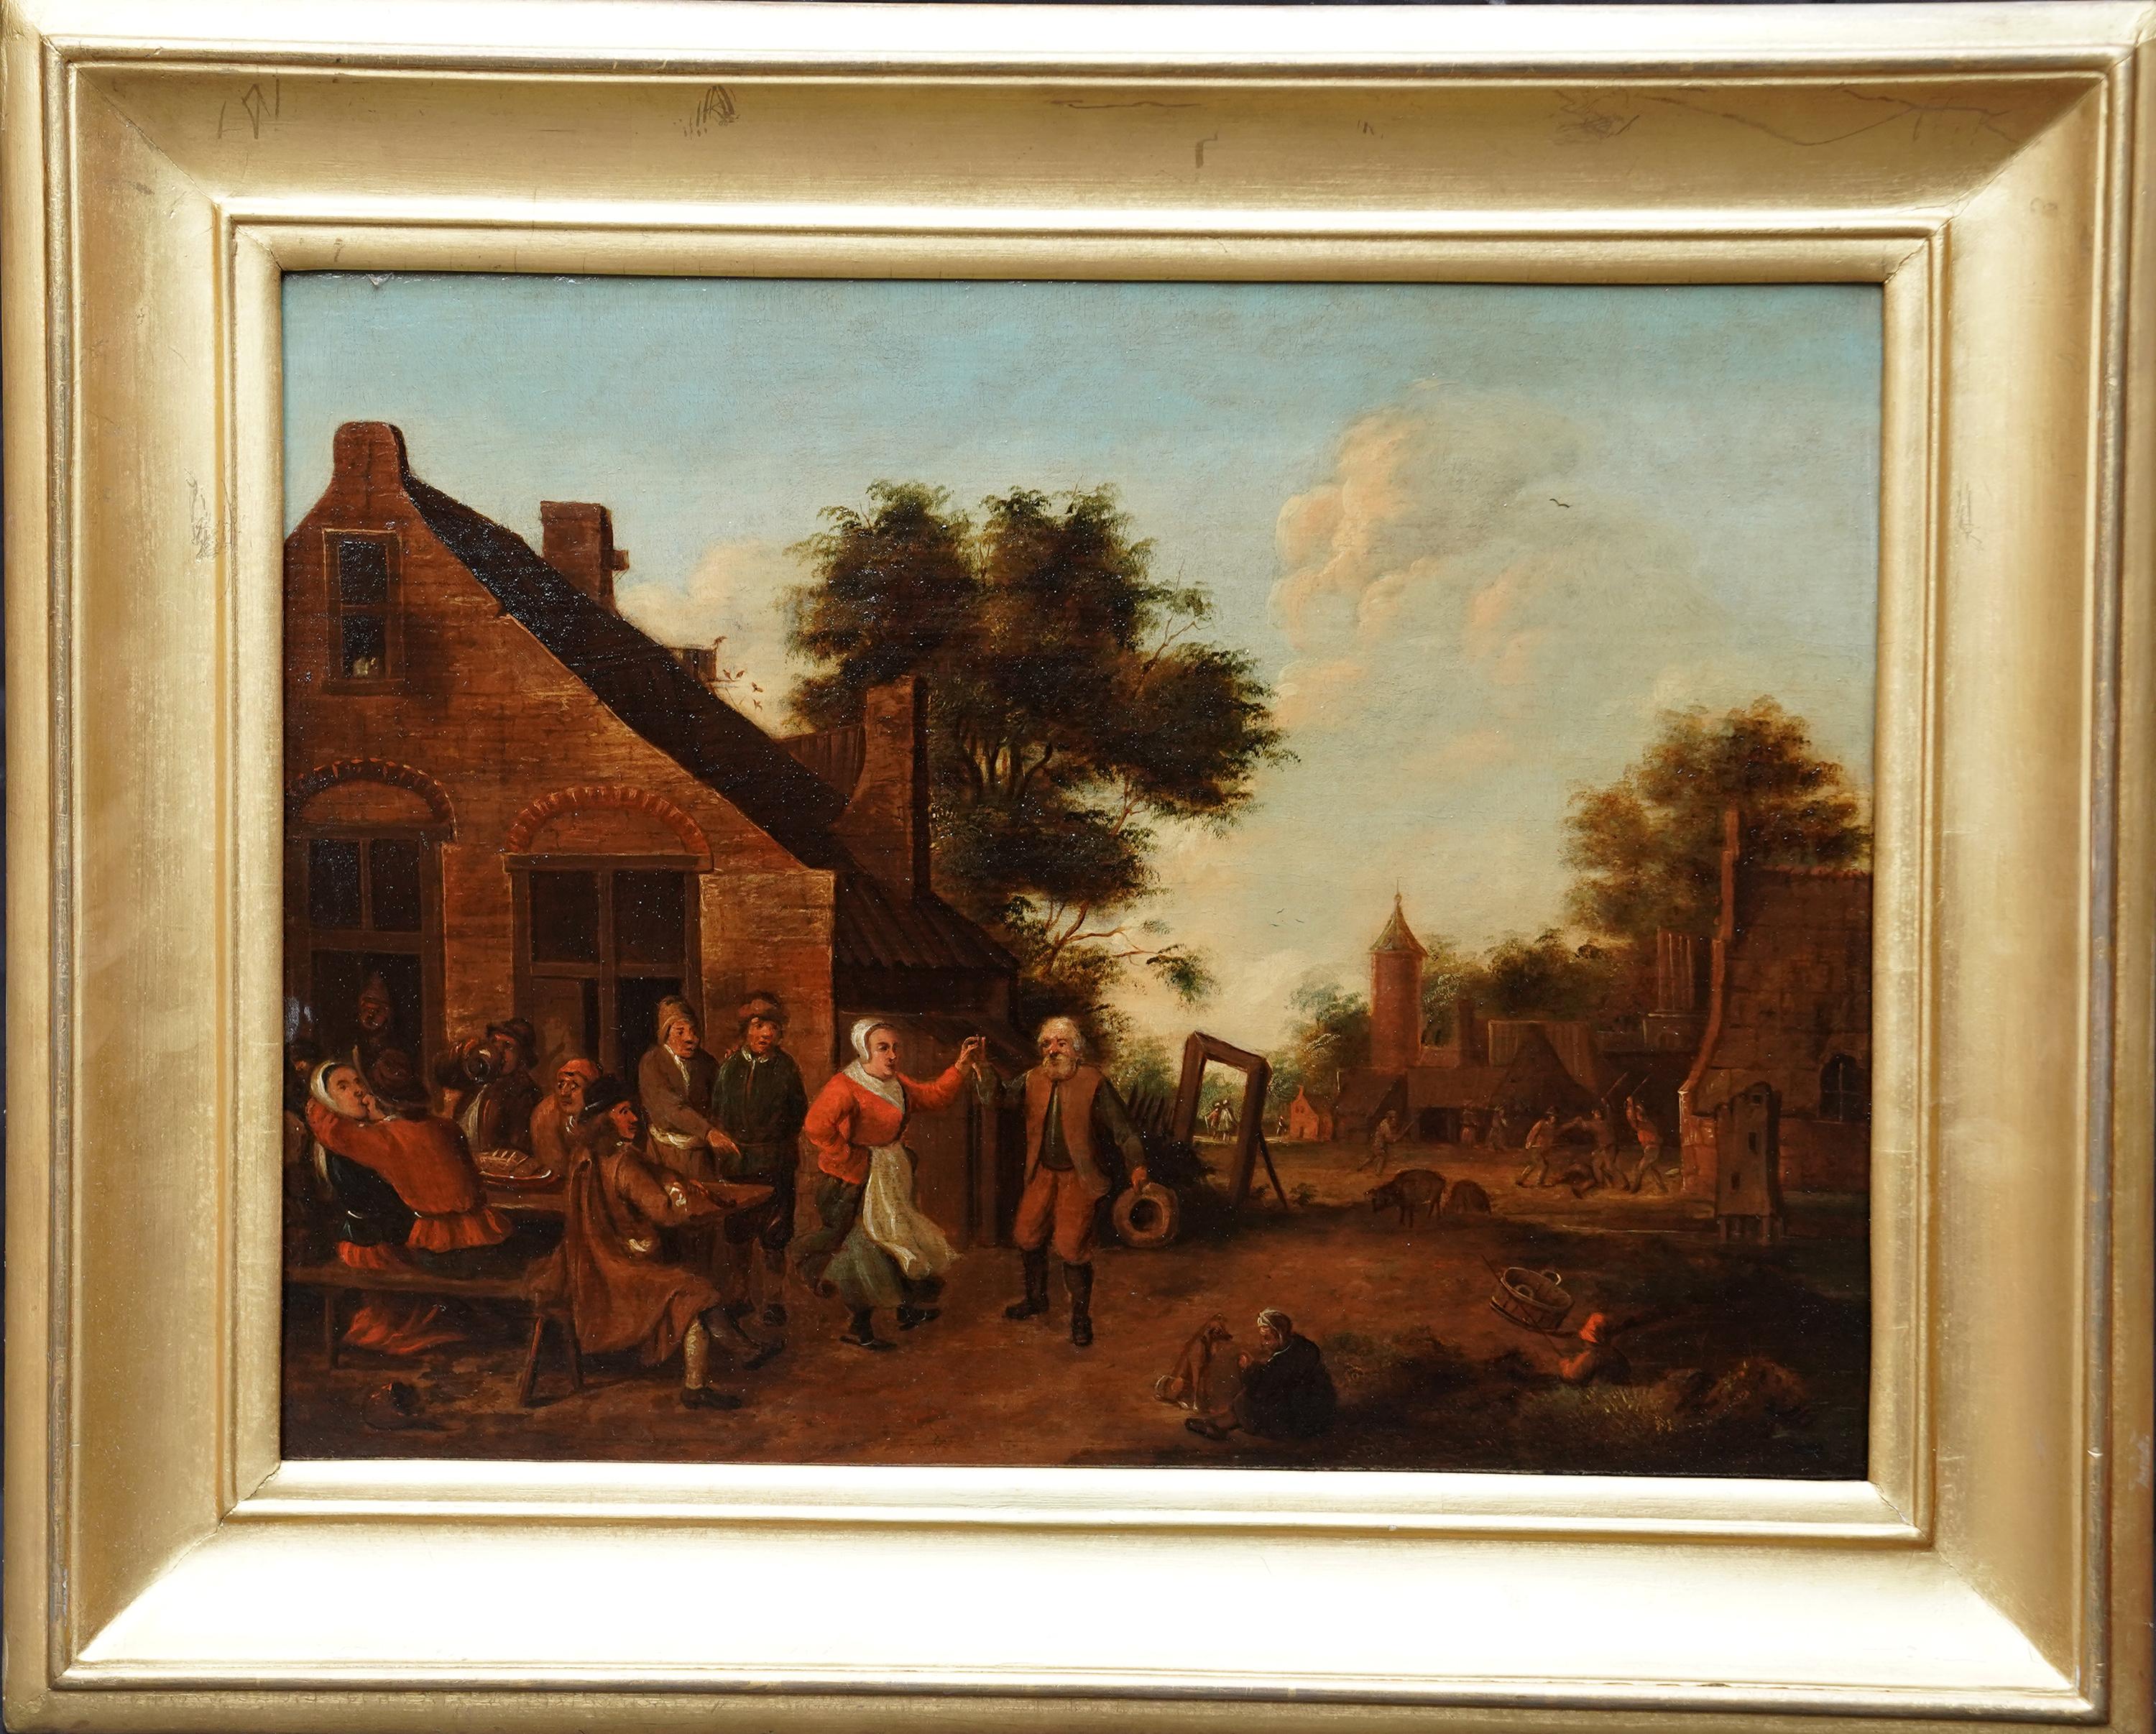 Villageois dans un paysage - Flemish 17thC art figurative landscape oil painting